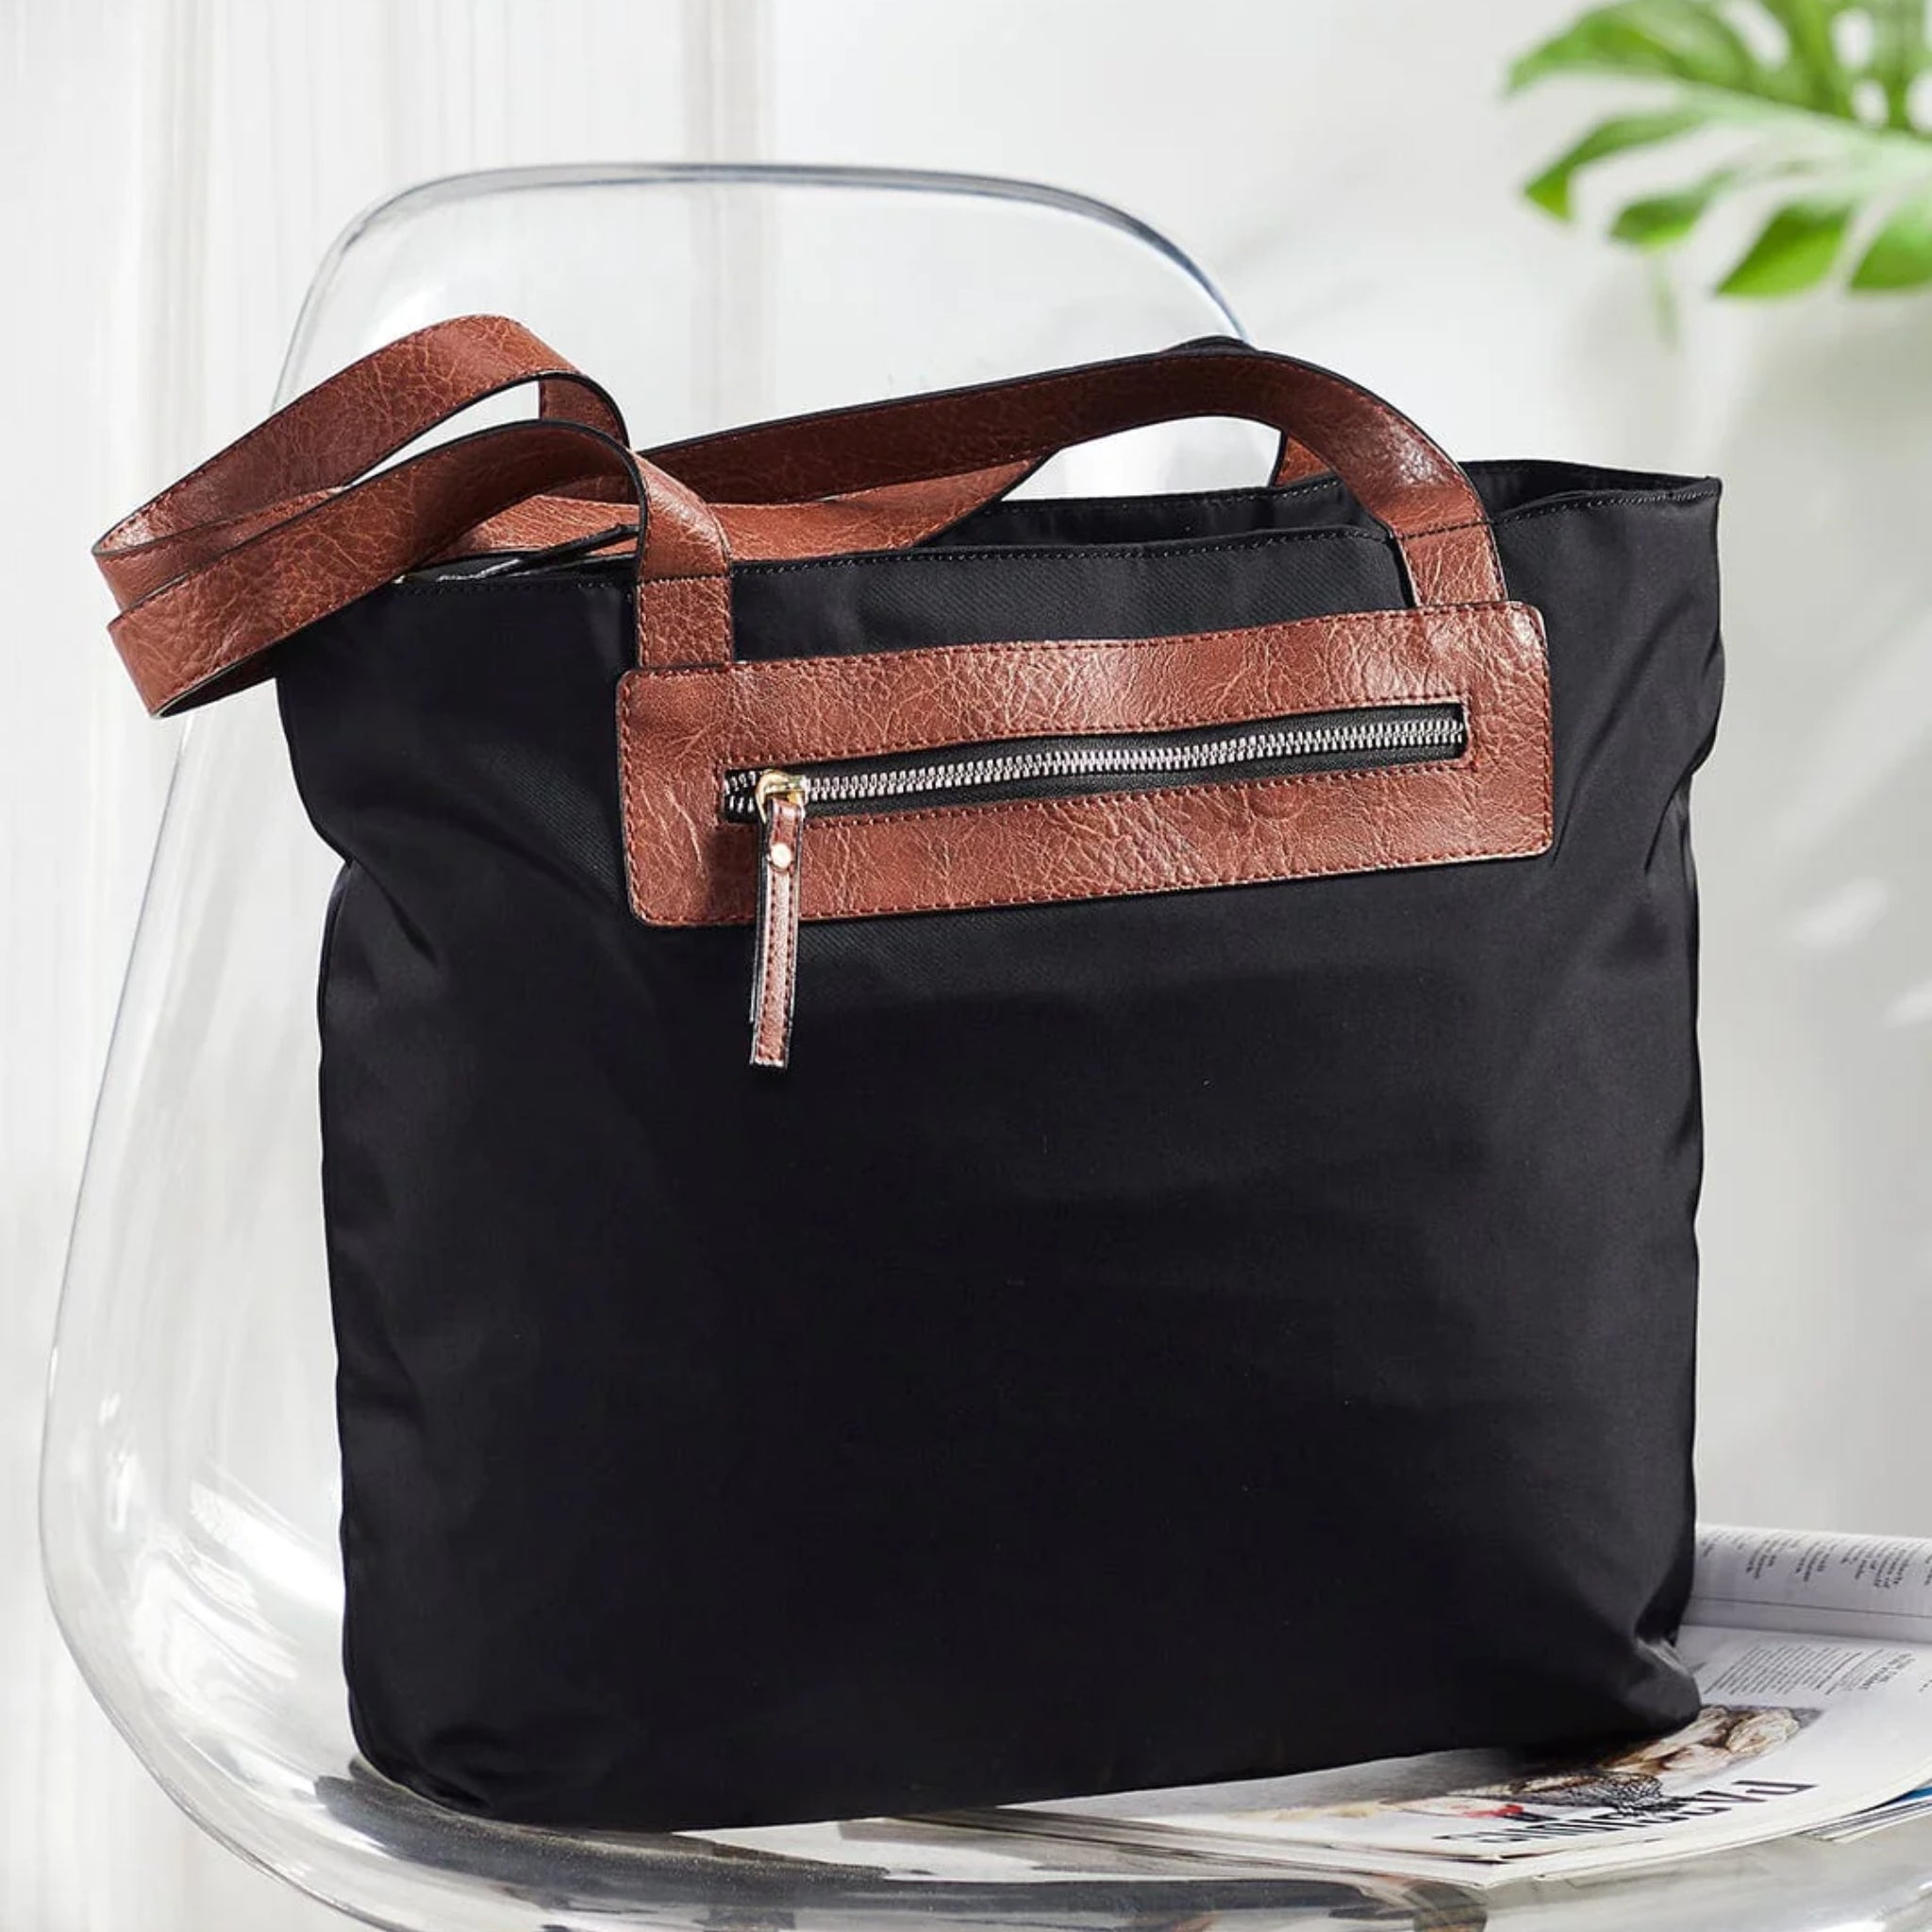 Mona-B Bag Mona B Handbag for Women | Zipper Tote Bag | Crossbody Sling Bag for Grocery, Shopping, Travel | Shoulder Bags for Women: Set of 2 (Black)